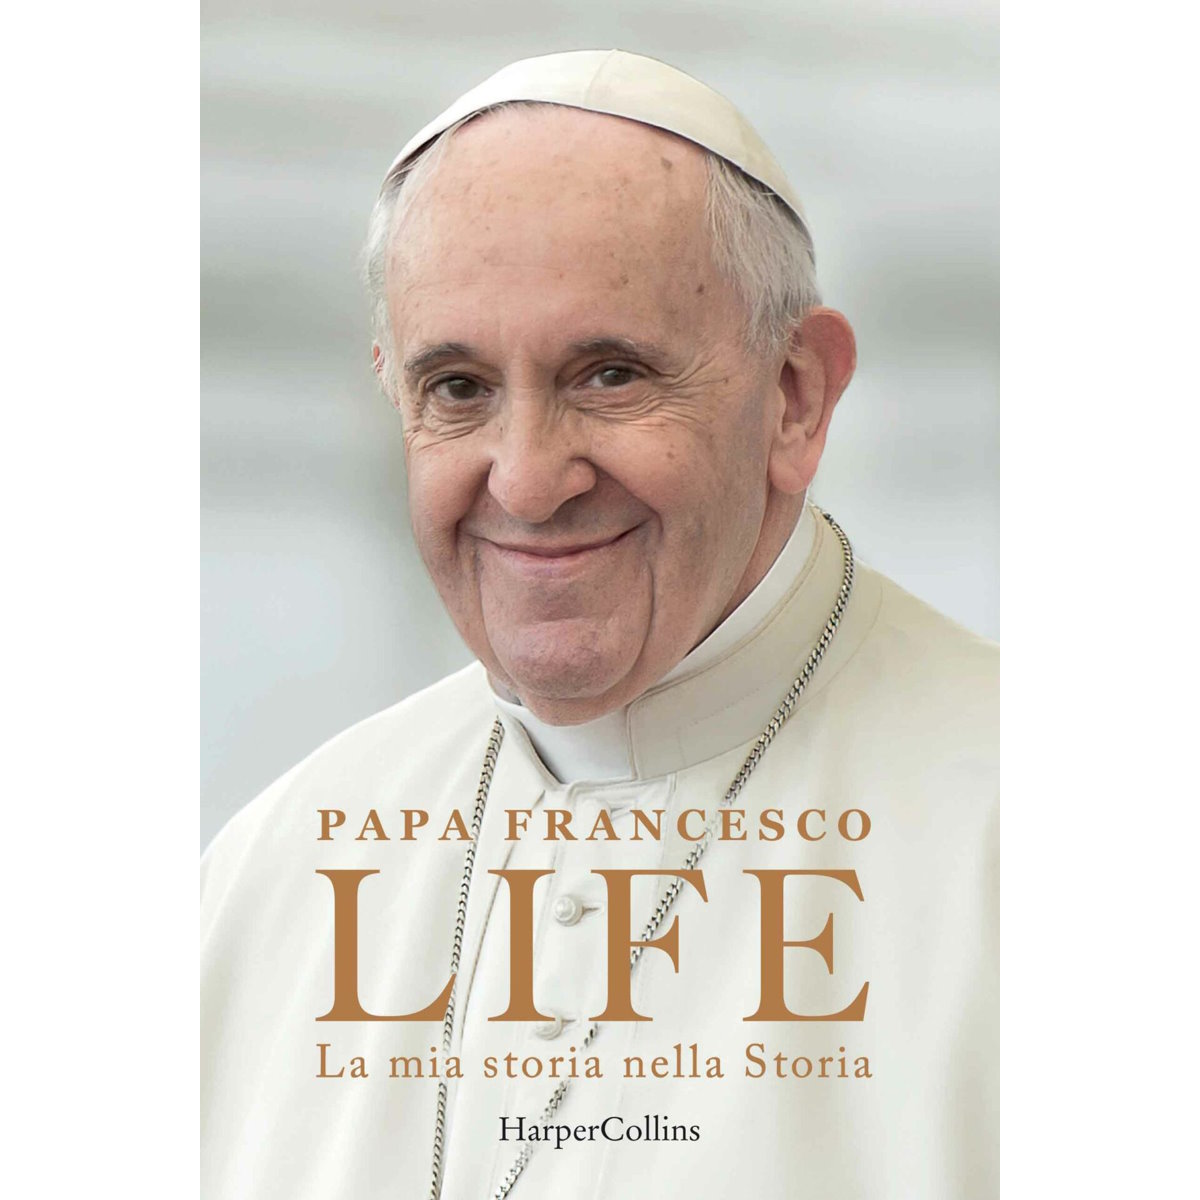 Nell'autobiografia in uscita Papa racconta di una sbandata in seminario. Aprirà ai preti sposati?